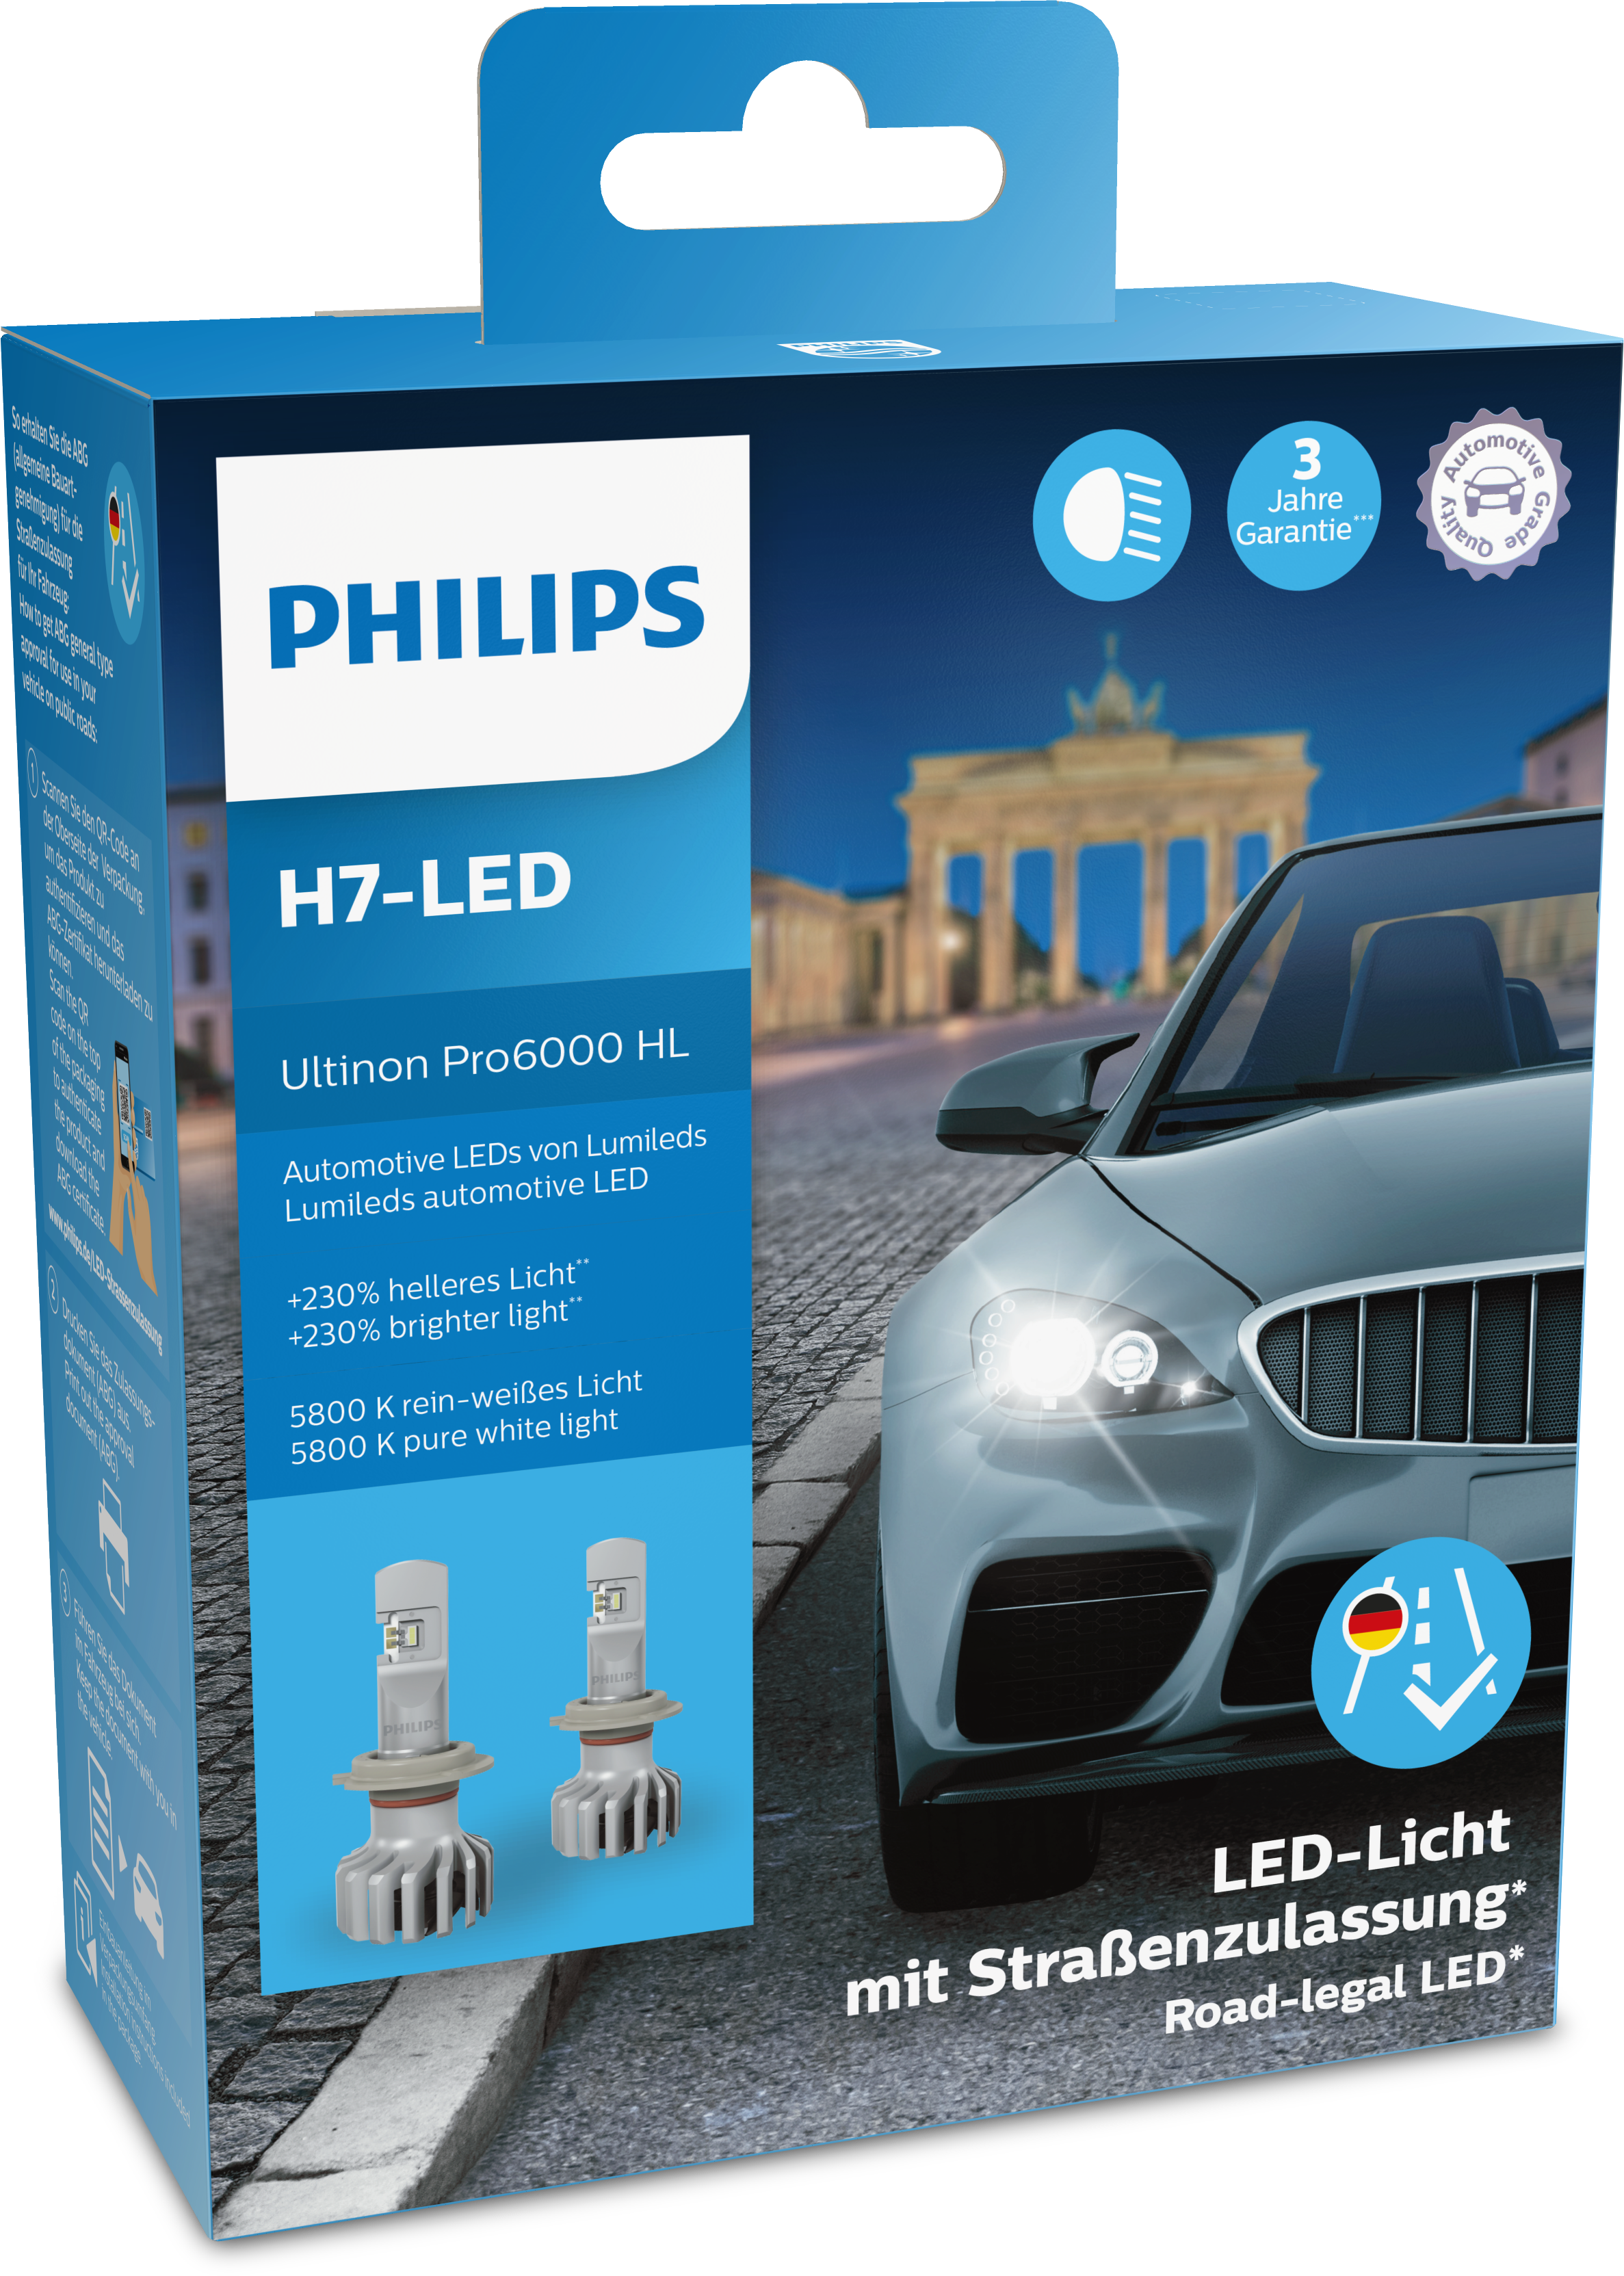 Philips Ultinon Pro6000 LED - Jetzt auch für viele Oldtimer